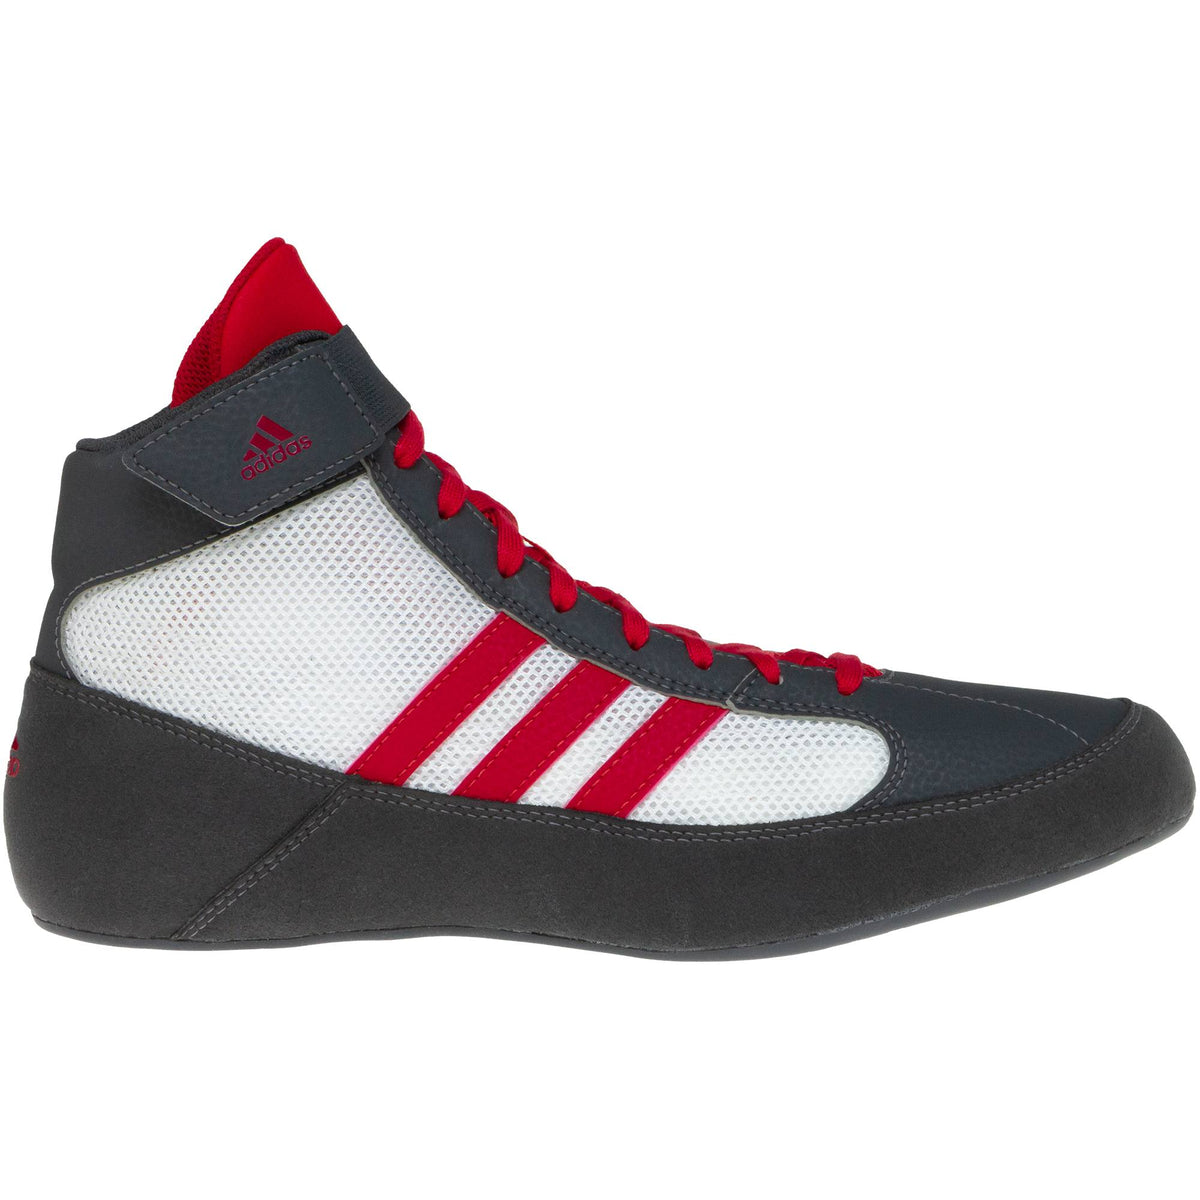 Buy adidas Men's Mat Hog 2.0 Wrestling Shoe (Red/Black/White,  Red/Black/White, 15 at